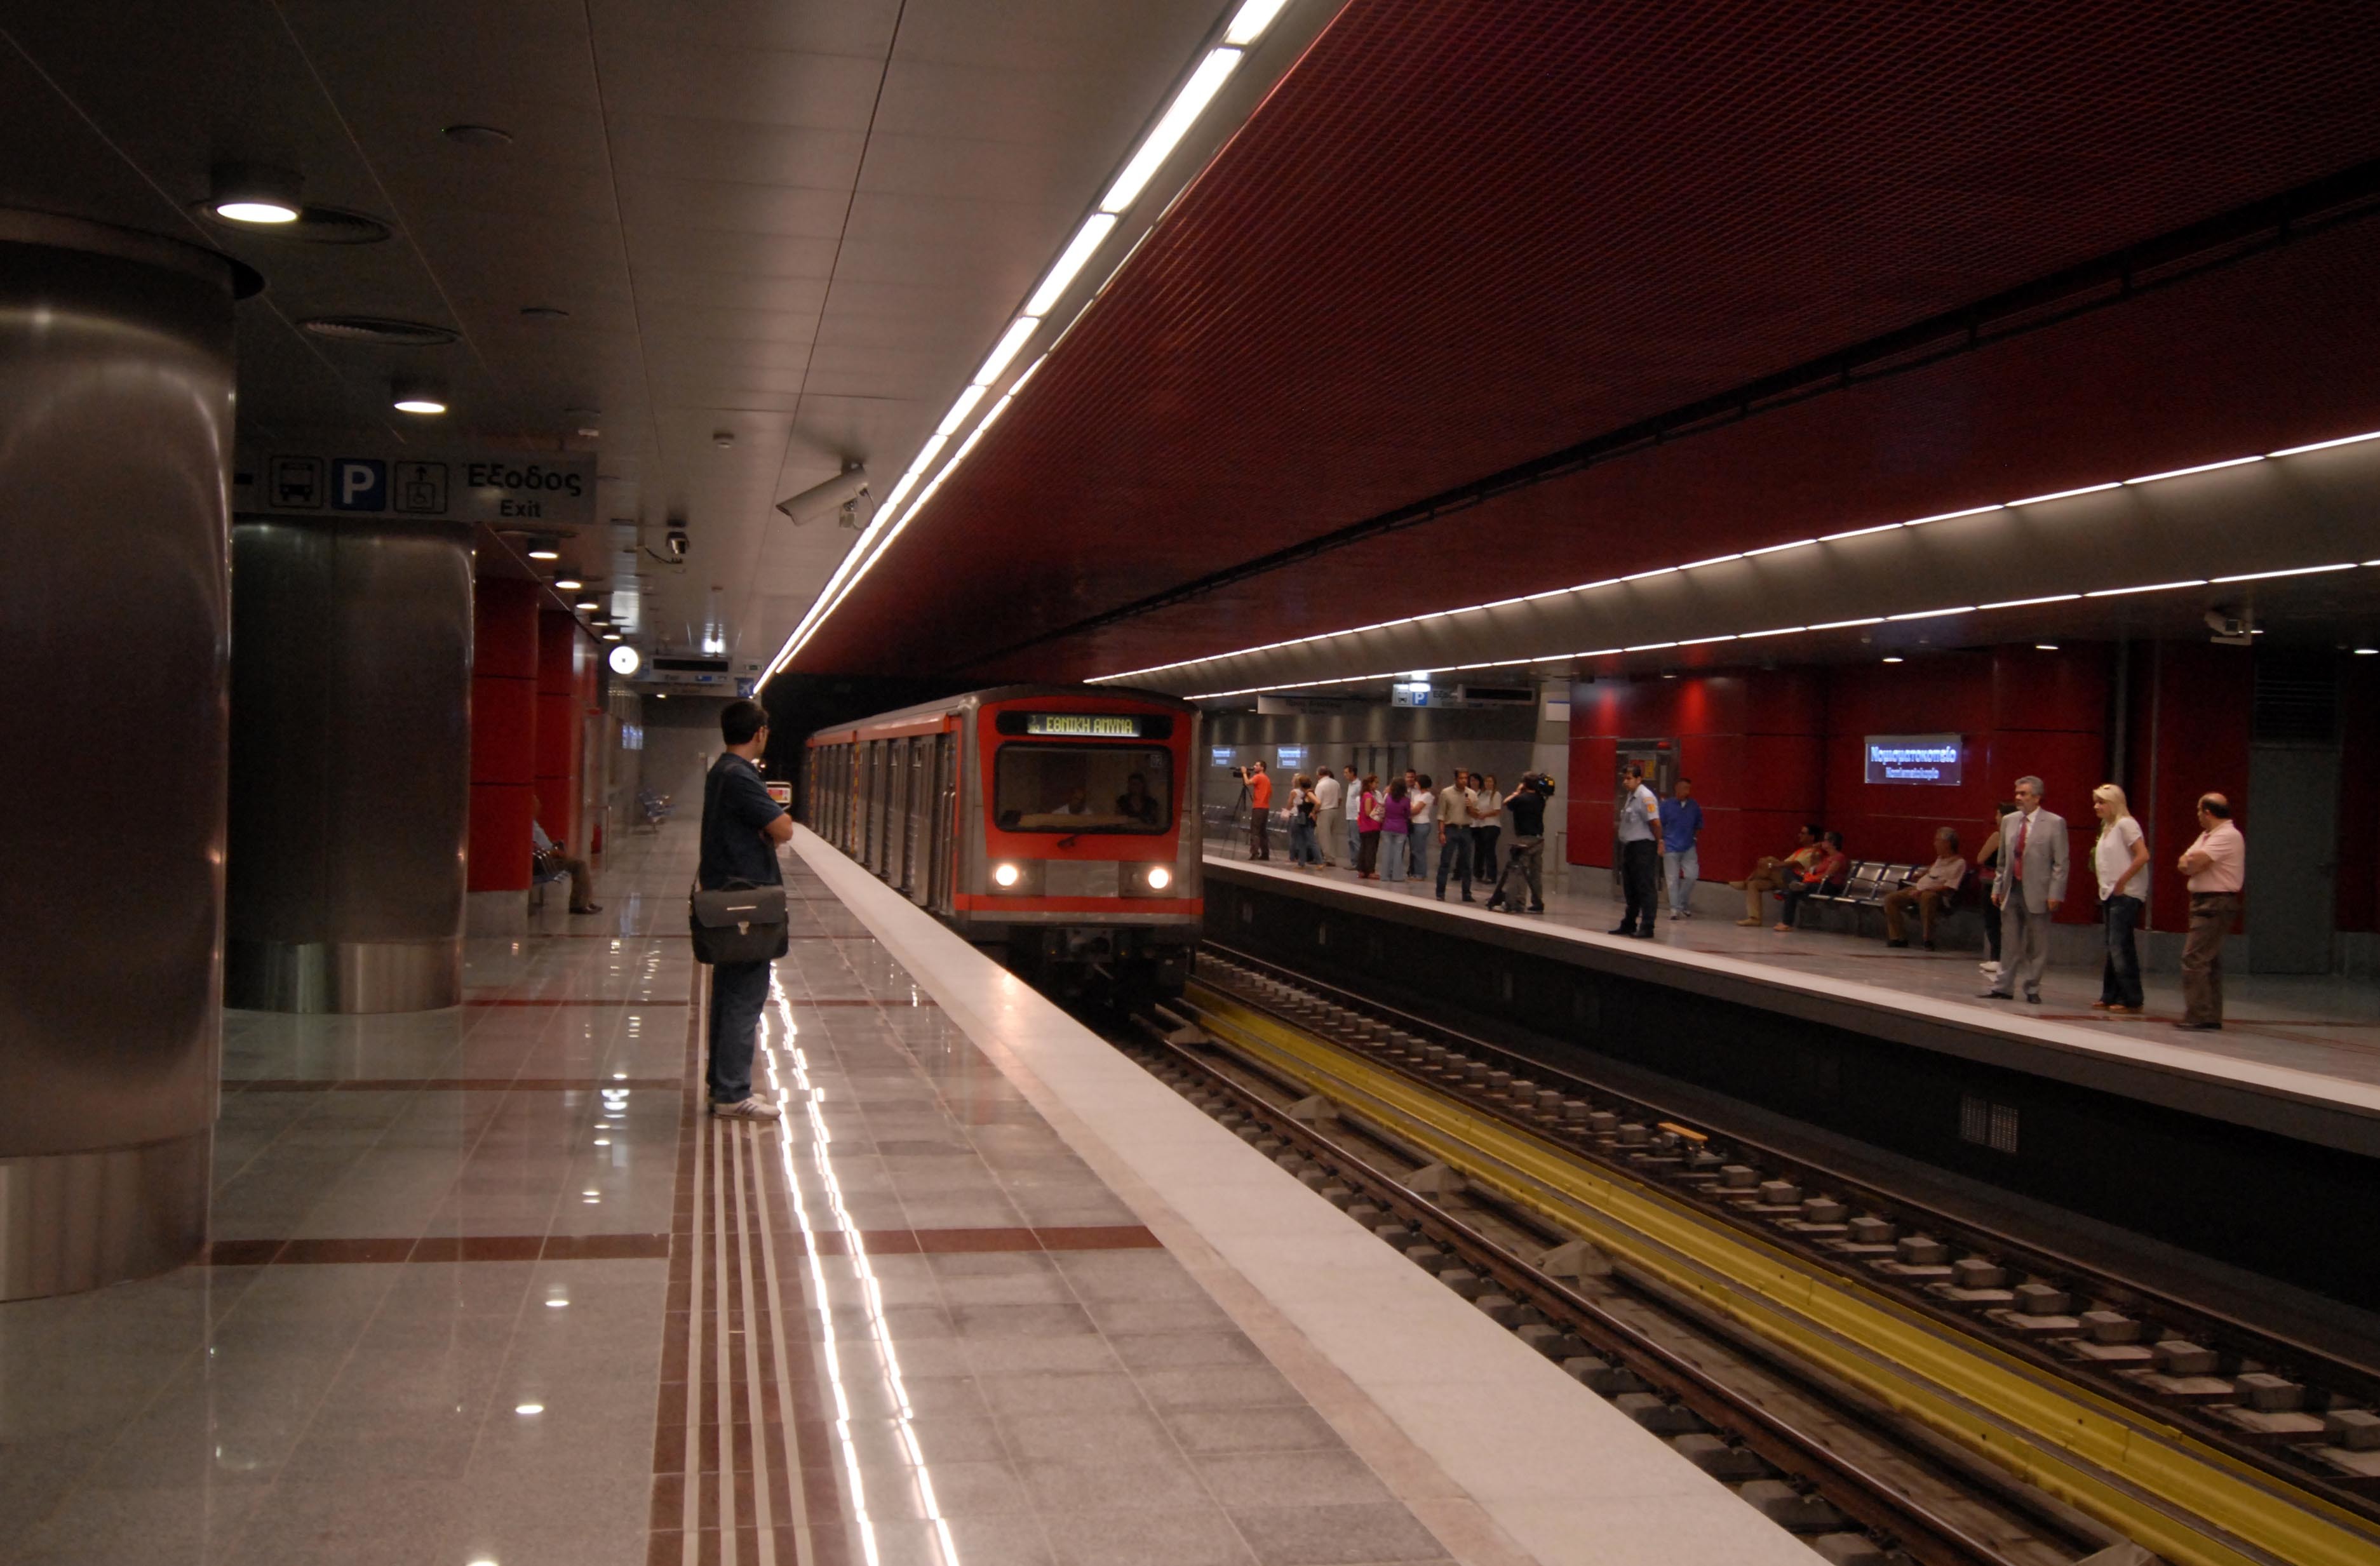 Θα αλλάξουν όψη οι νέοι σταθμοί του Μετρό;